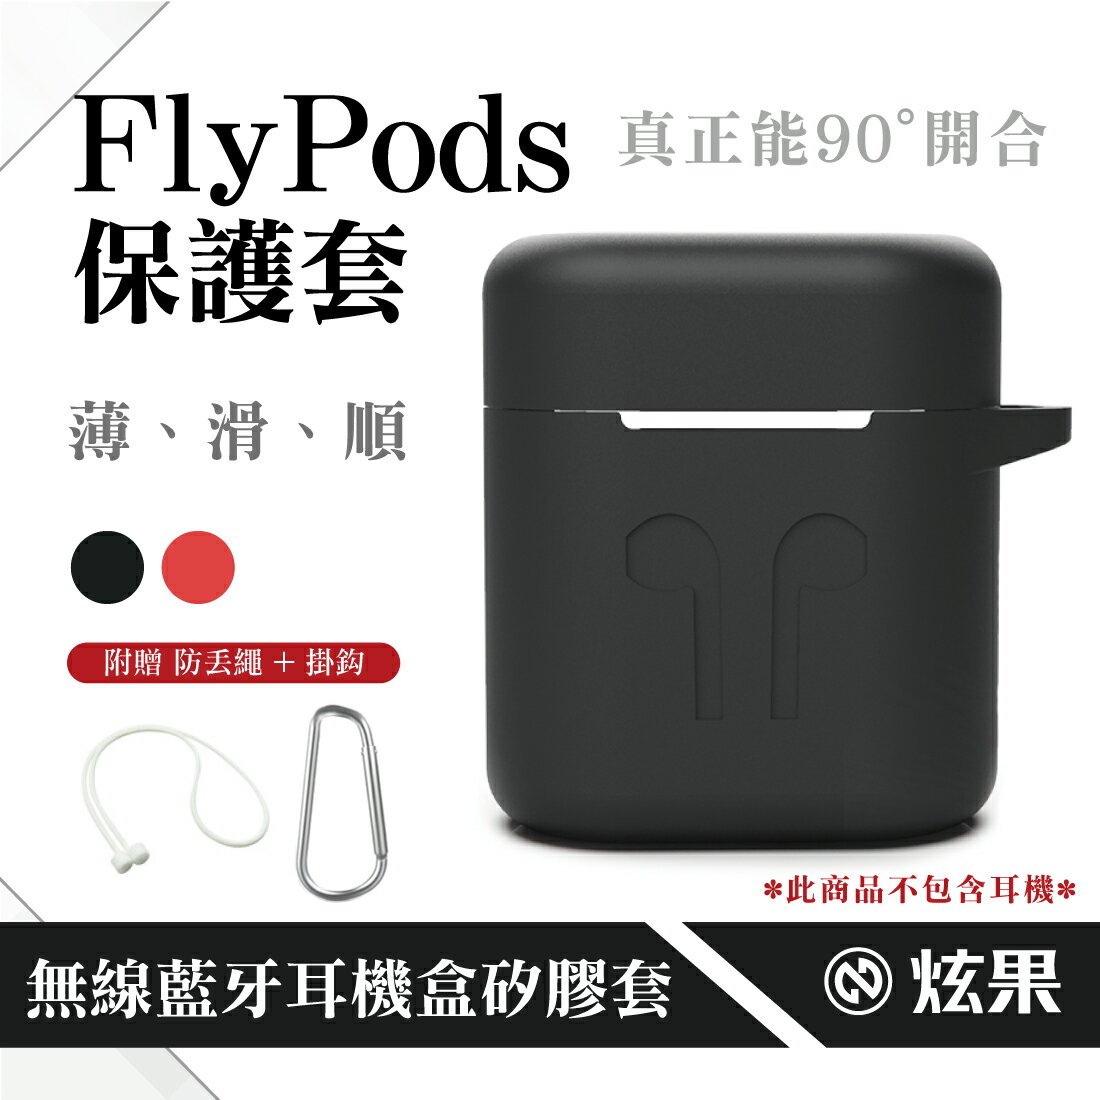 華為FlyPods 充電盒保護套 FreeBuds2 Pro無線藍牙耳機盒 升級版 矽膠套/殼 送防丟繩/掛勾 超薄軟殼